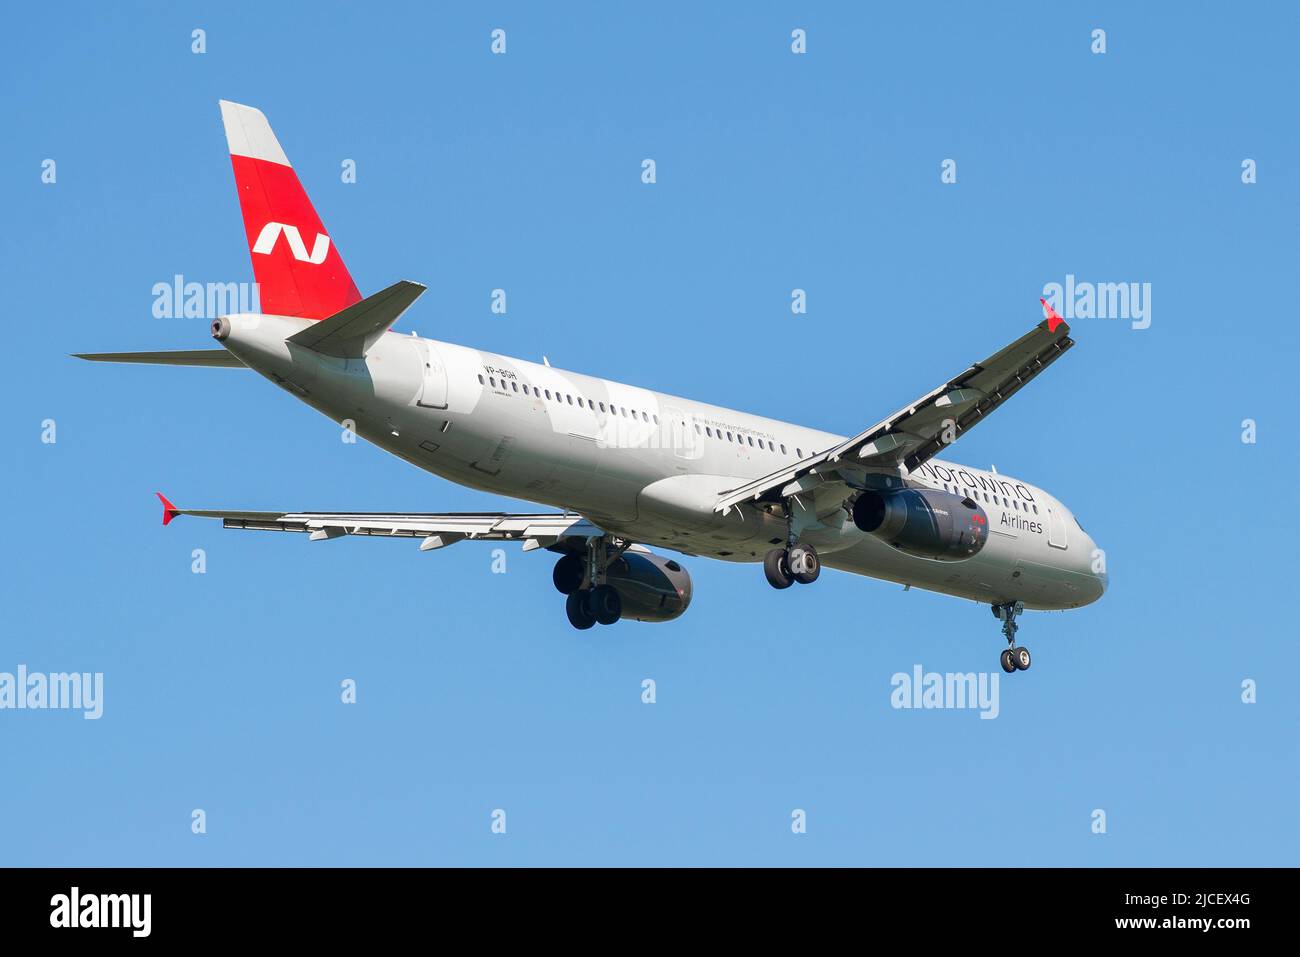 SAINT-PÉTERSBOURG, RUSSIE - 29 MAI 2021 : départ de l'Airbus A321-232 (VP-BGH) de Nordwind Airlines dans un ciel bleu sans nuages Banque D'Images